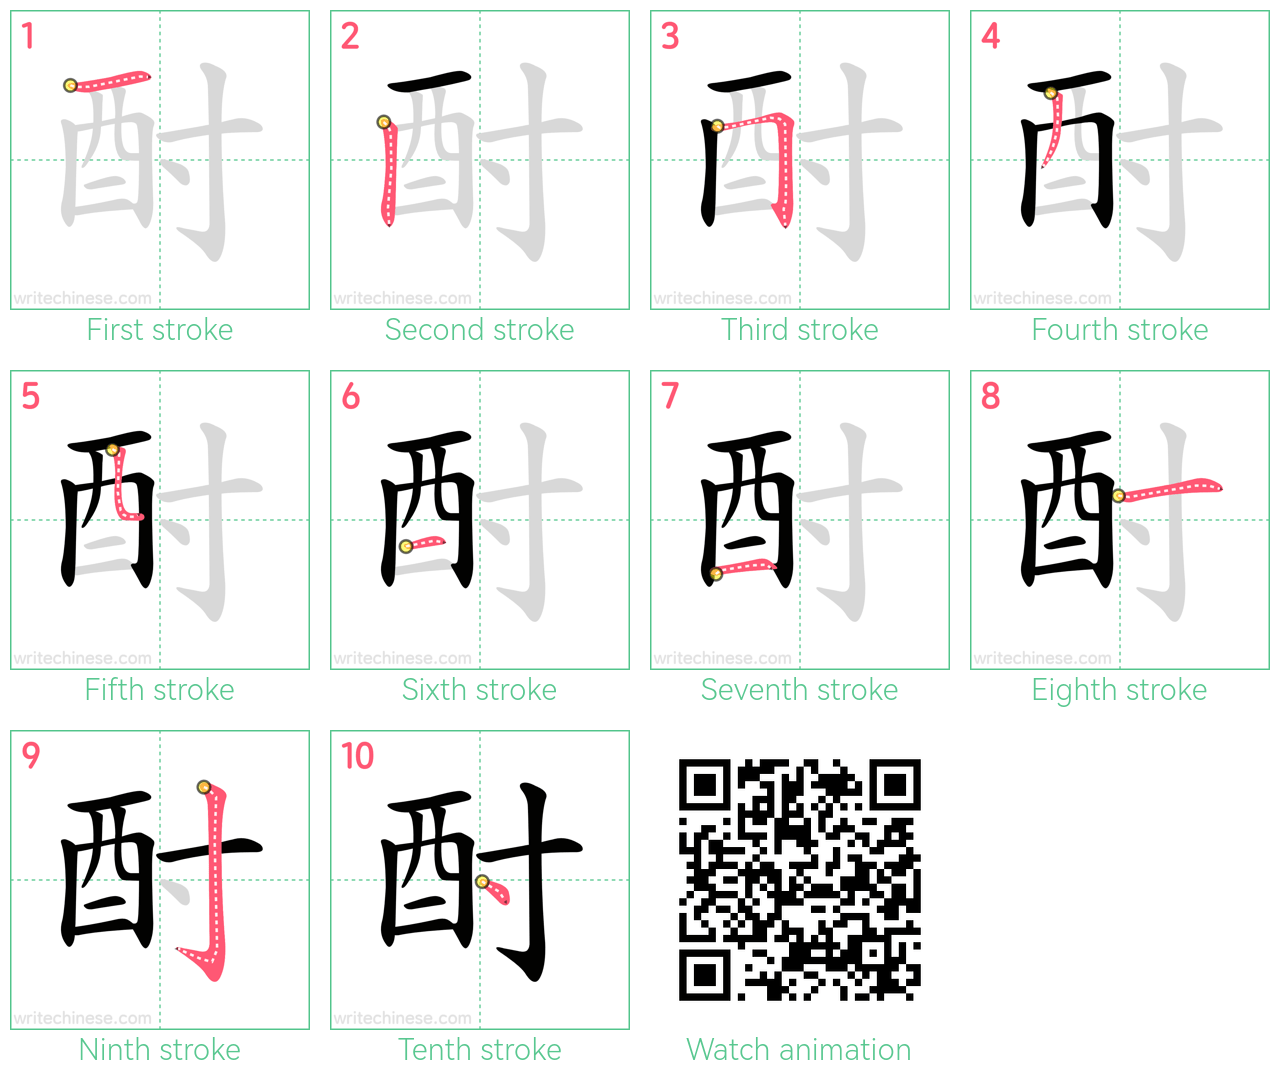 酎 step-by-step stroke order diagrams